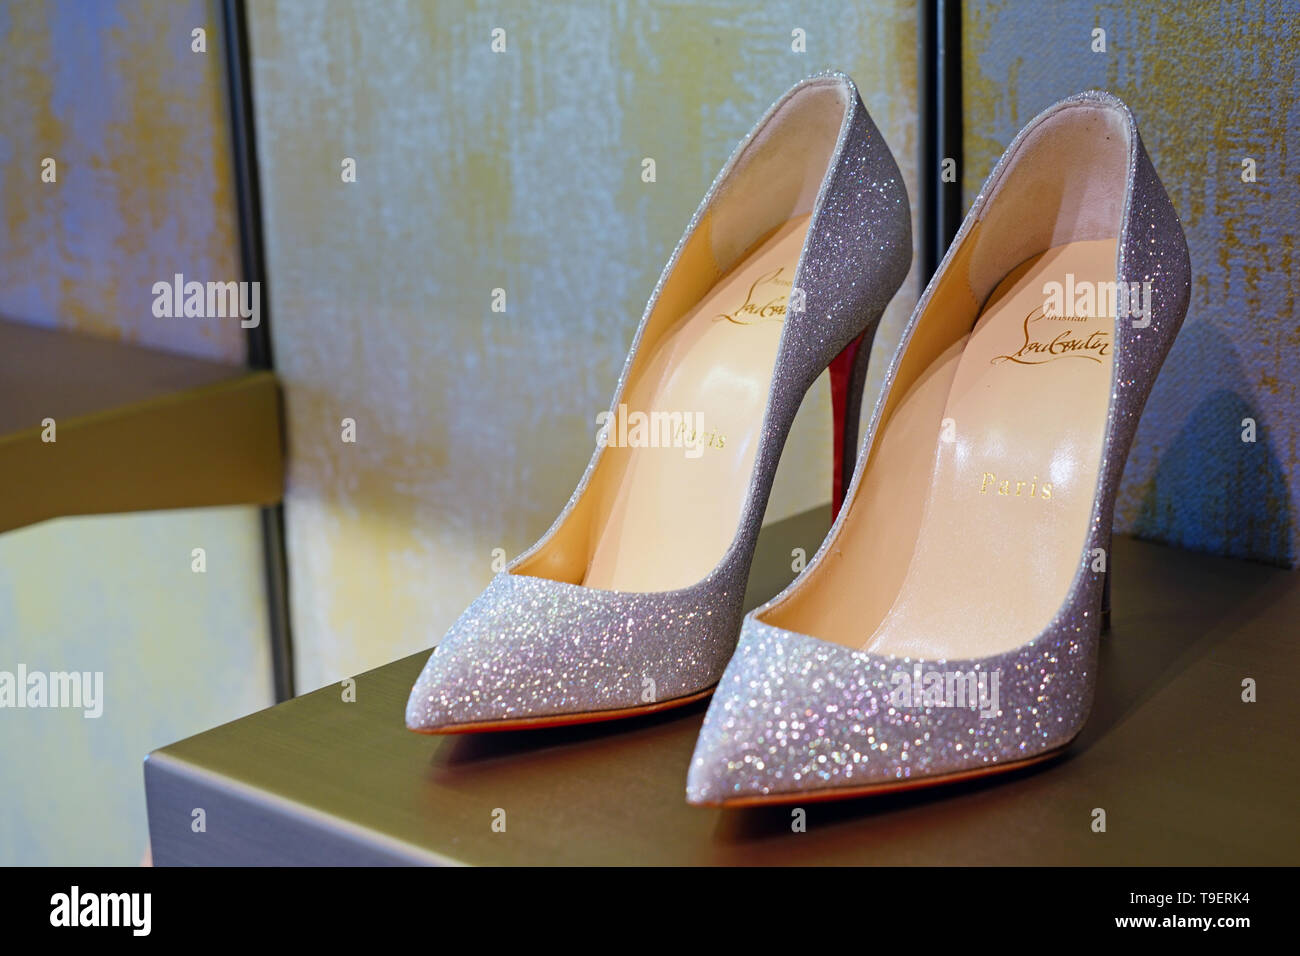 Venecia, Italia -8 Abr 2019- Vista de caros zapatos de tacón alto de la  bomba por la marca de calzado de lujo Christian Louboutin a la venta en una  tienda de Venecia